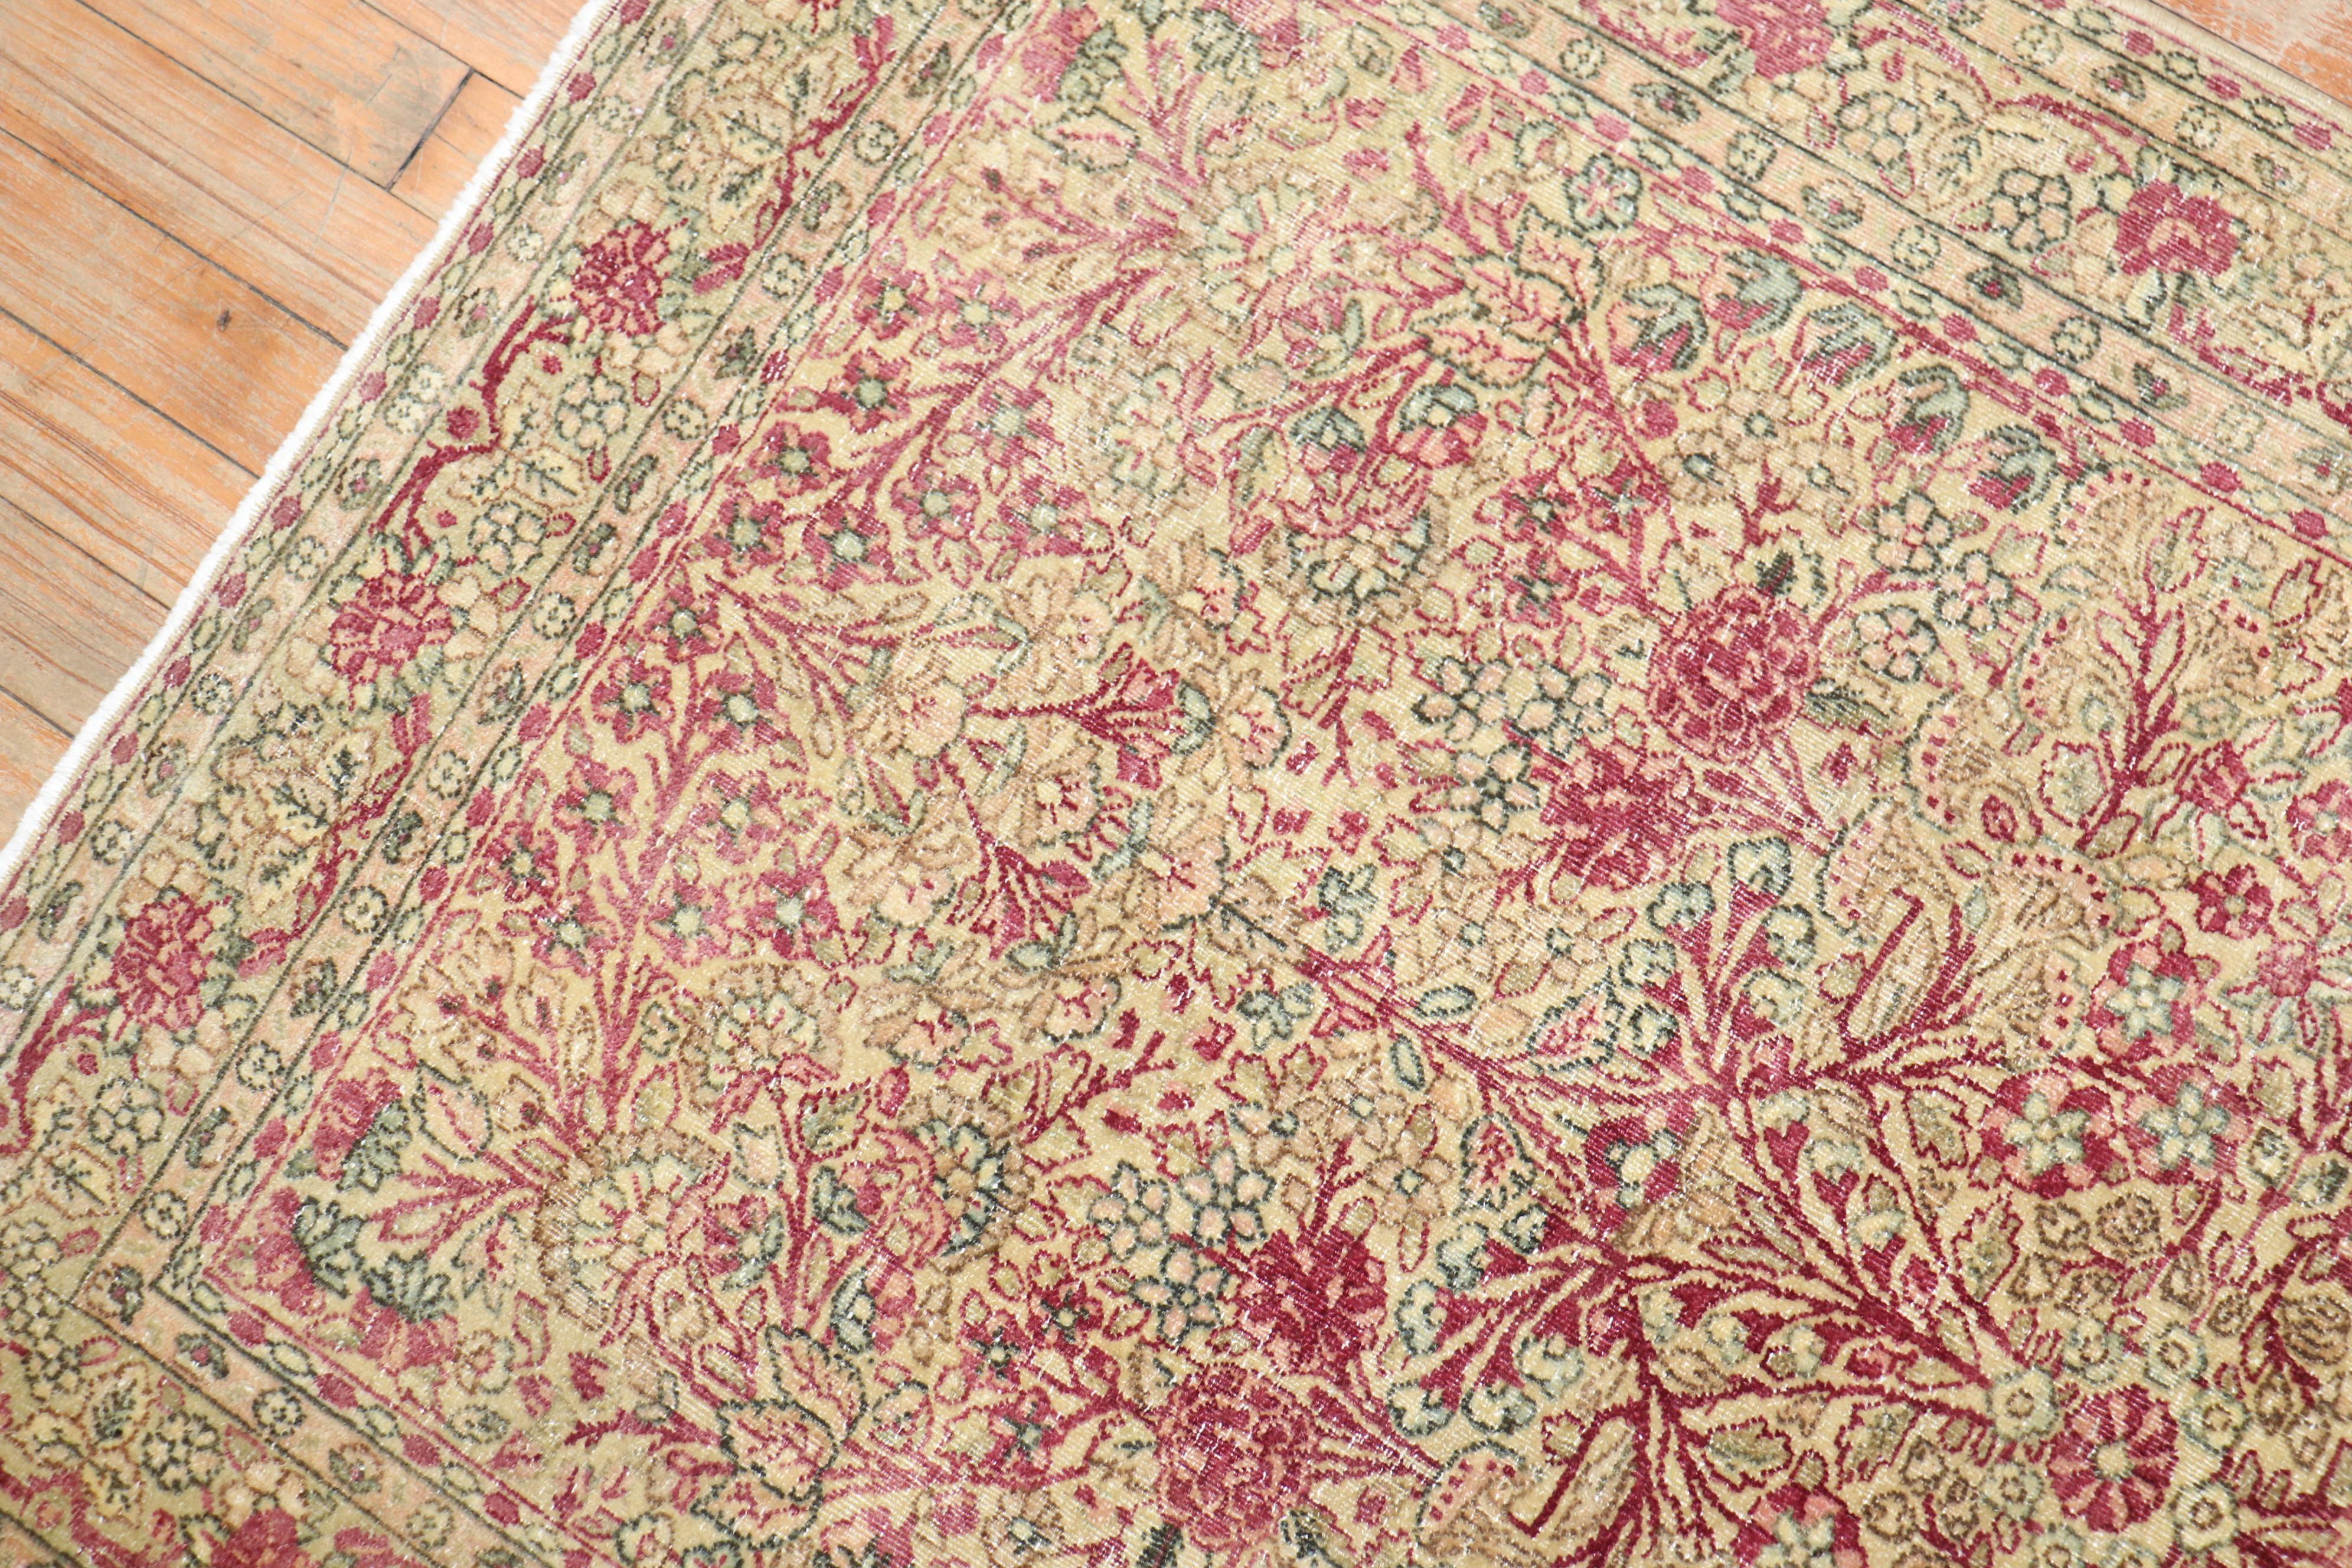 Ein traditioneller Lavar Kerman-Teppich aus dem frühen 20. Jahrhundert in Streugröße.

Maße: 3'x 4'10